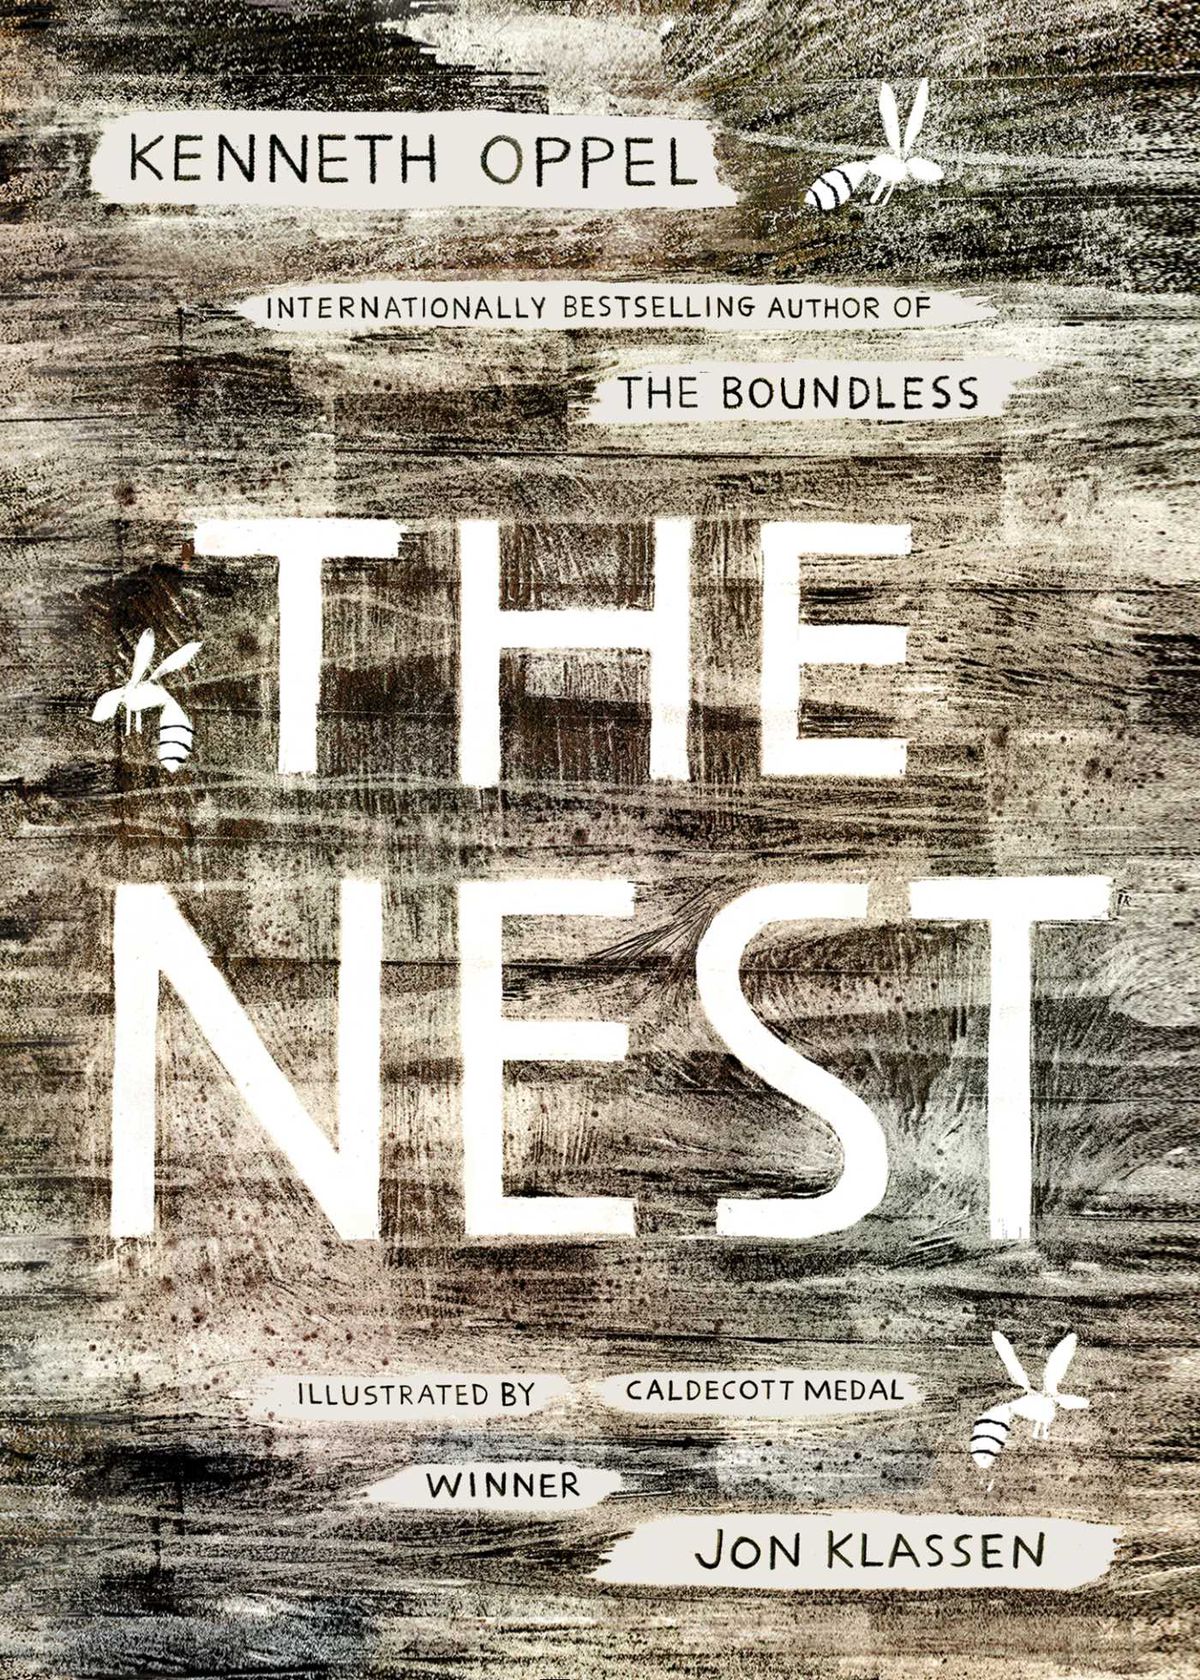 Immagine di copertina per The Nest di Kenneth Oppel, che sembra ombreggiata dalla corteccia di un albero con immagini bianche di calabroni su di essa.